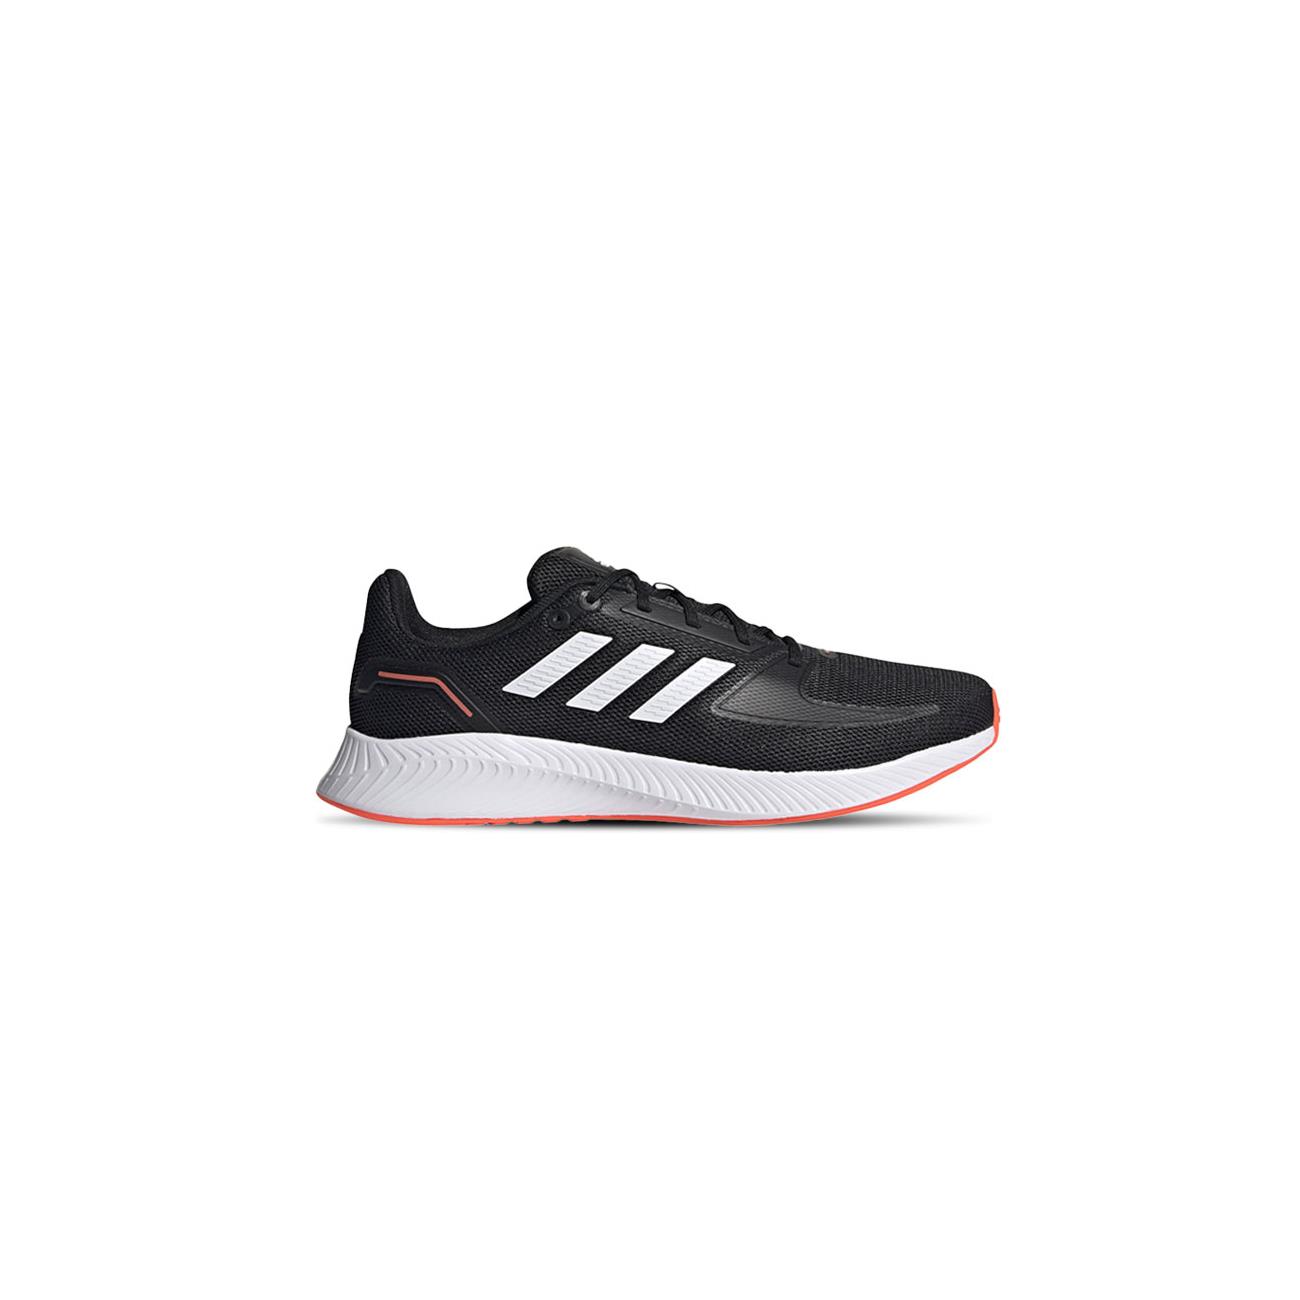 Regeringsforordning Fremsyn misundelse Adidas Kids Unisex Run Falcon 20 Lace Up Sports Shoes Black